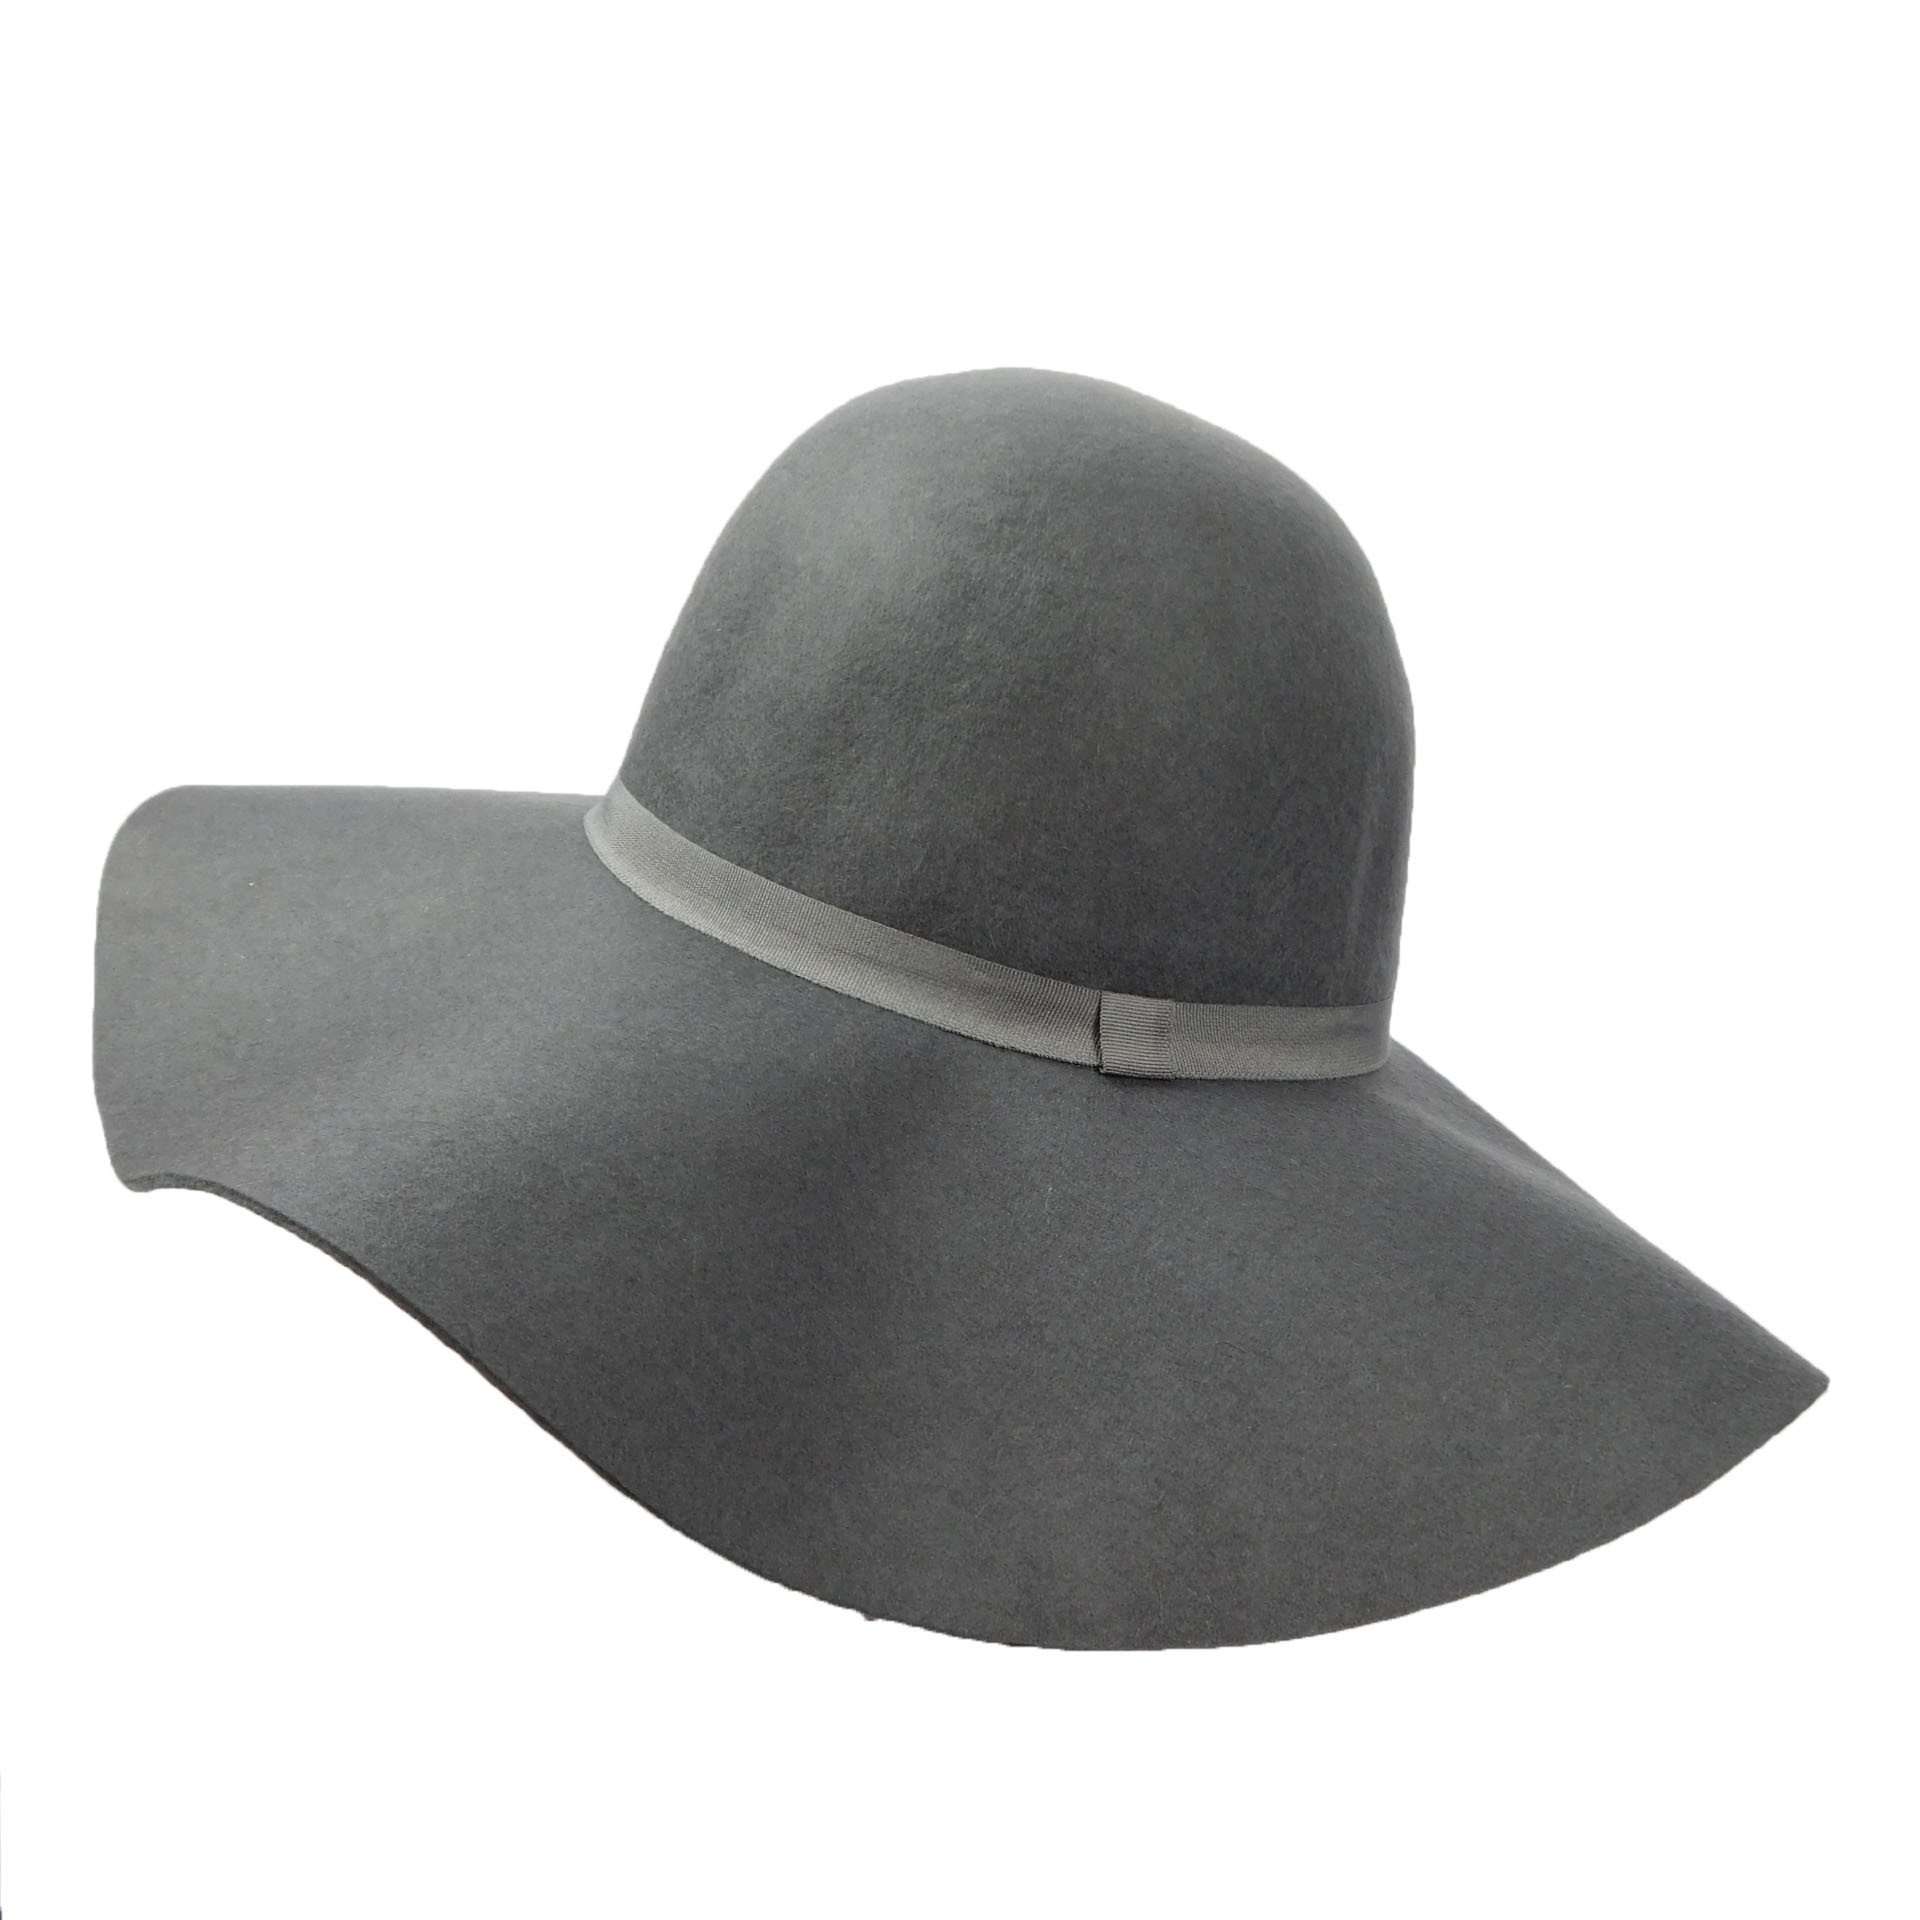 Wool Felt Wide Brim Hat for Women Wide Brim Sun Hat Boardwalk Style Hats WWWF264CL Charcoal Medium (57 cm) 